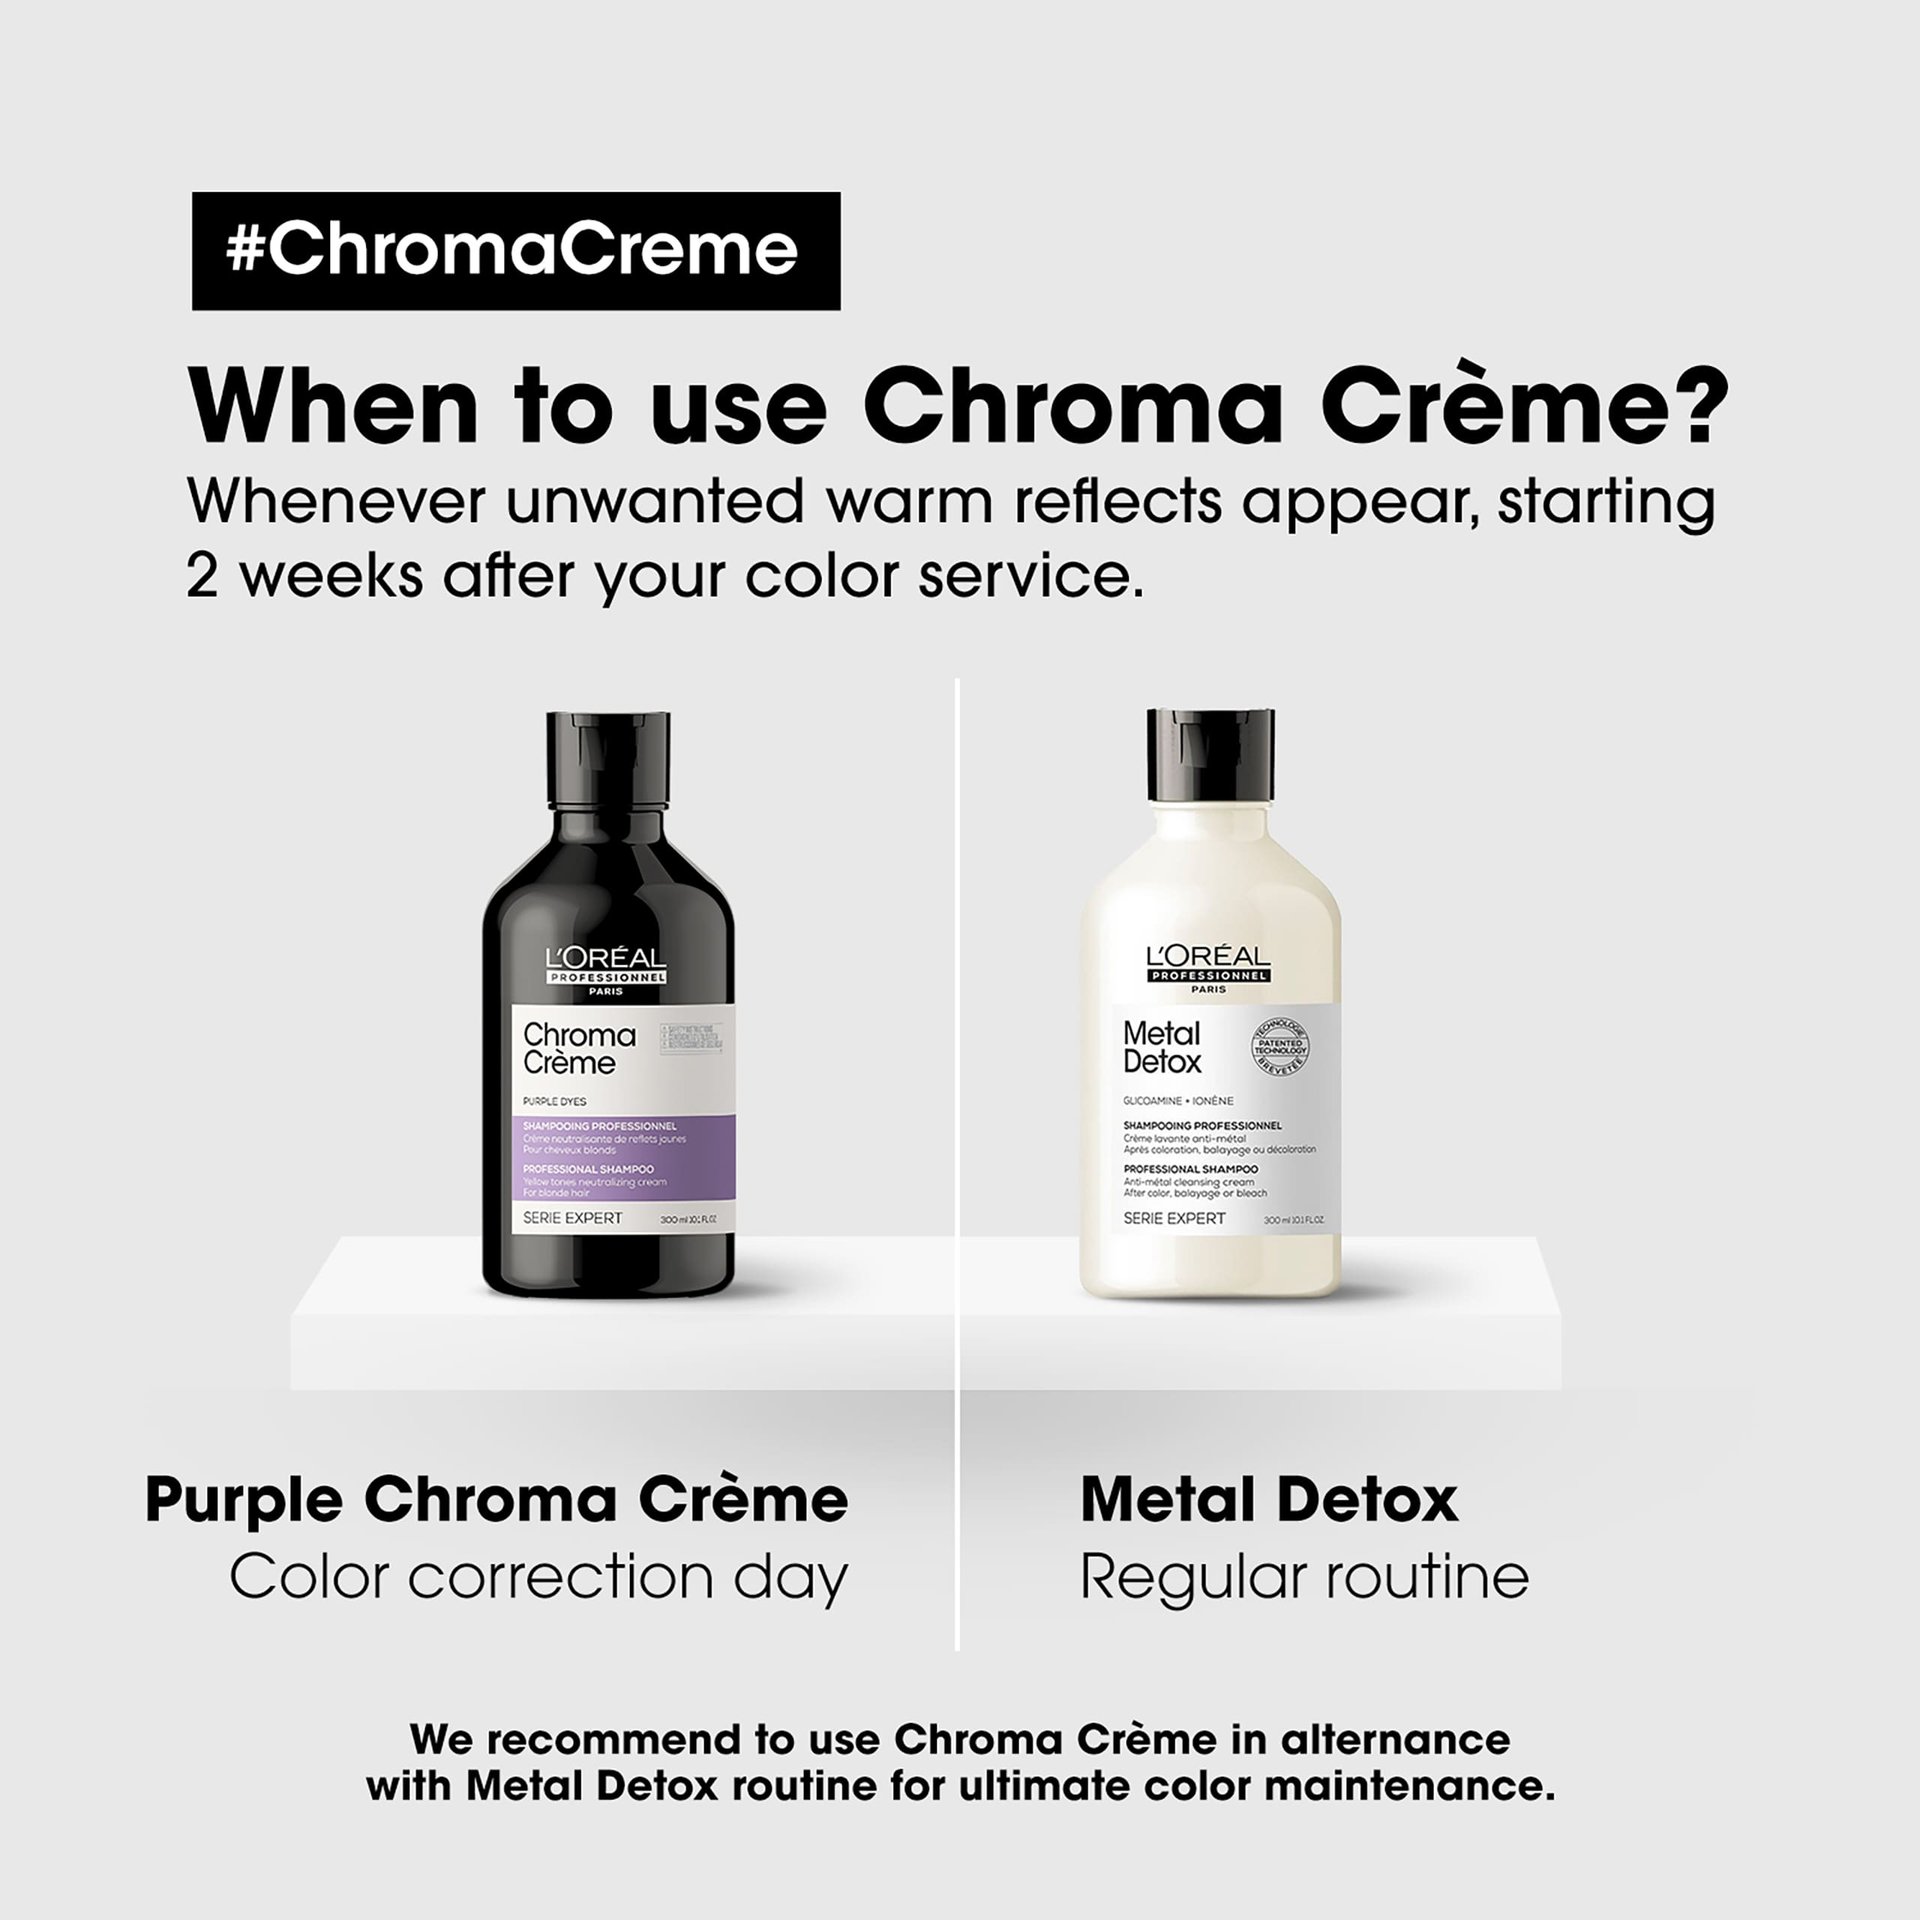 chroma-creme-shampoo-purple-neutralize-yellow-reflects3